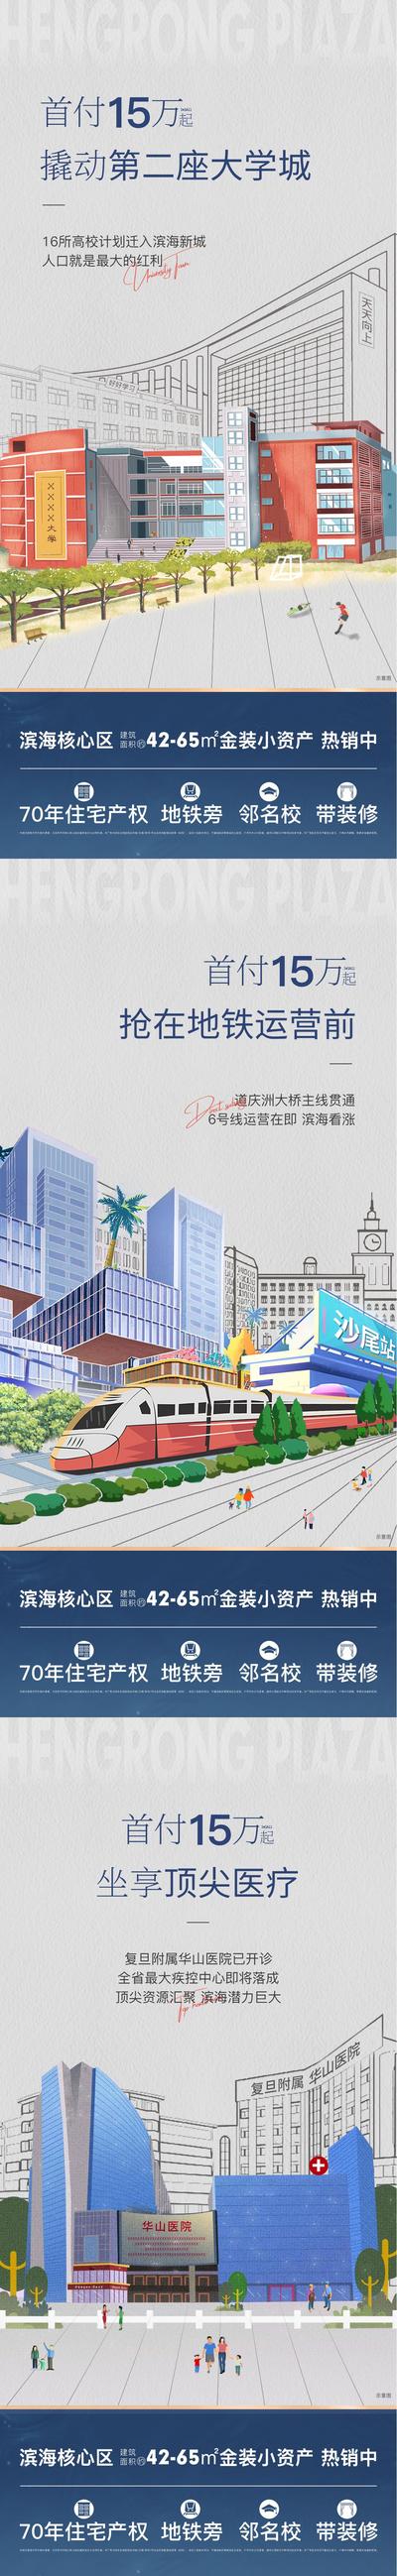 南门网 广告 海报 地产 配套 价值点 教育 交通 区域 插画